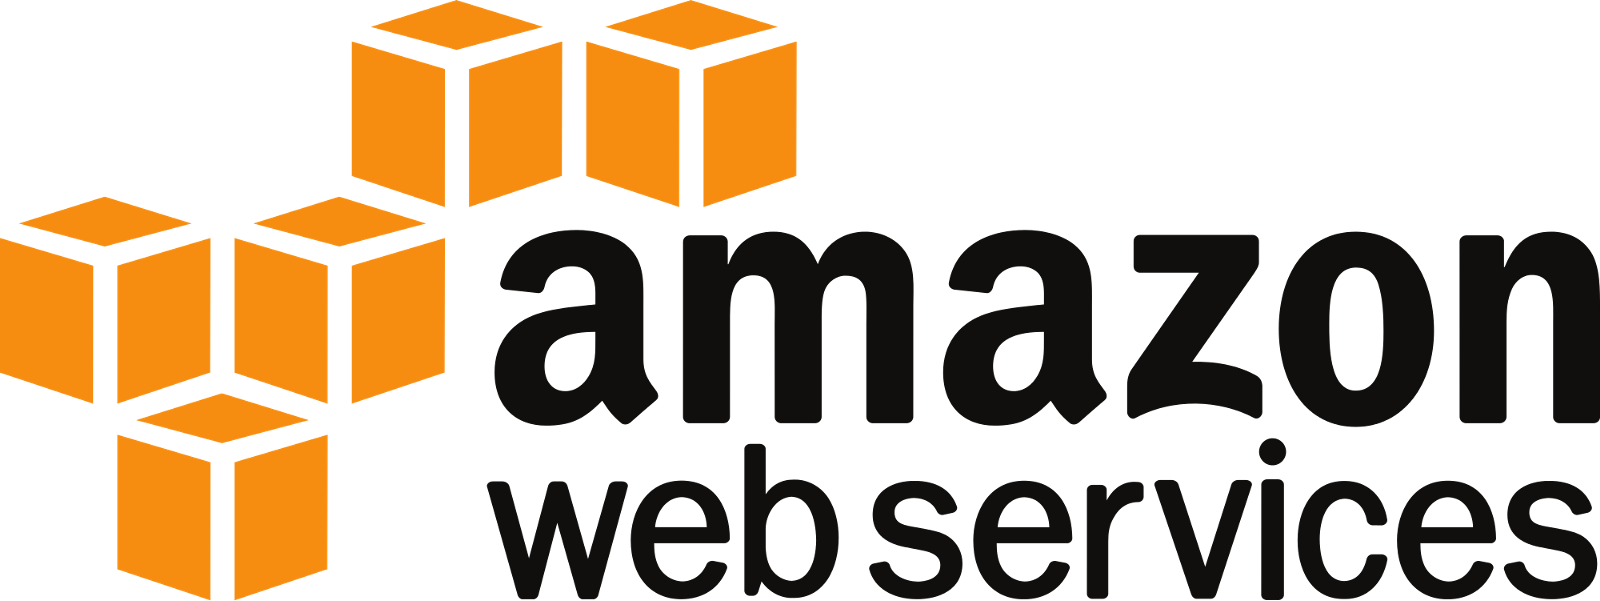 Amazon Web Services Cloud